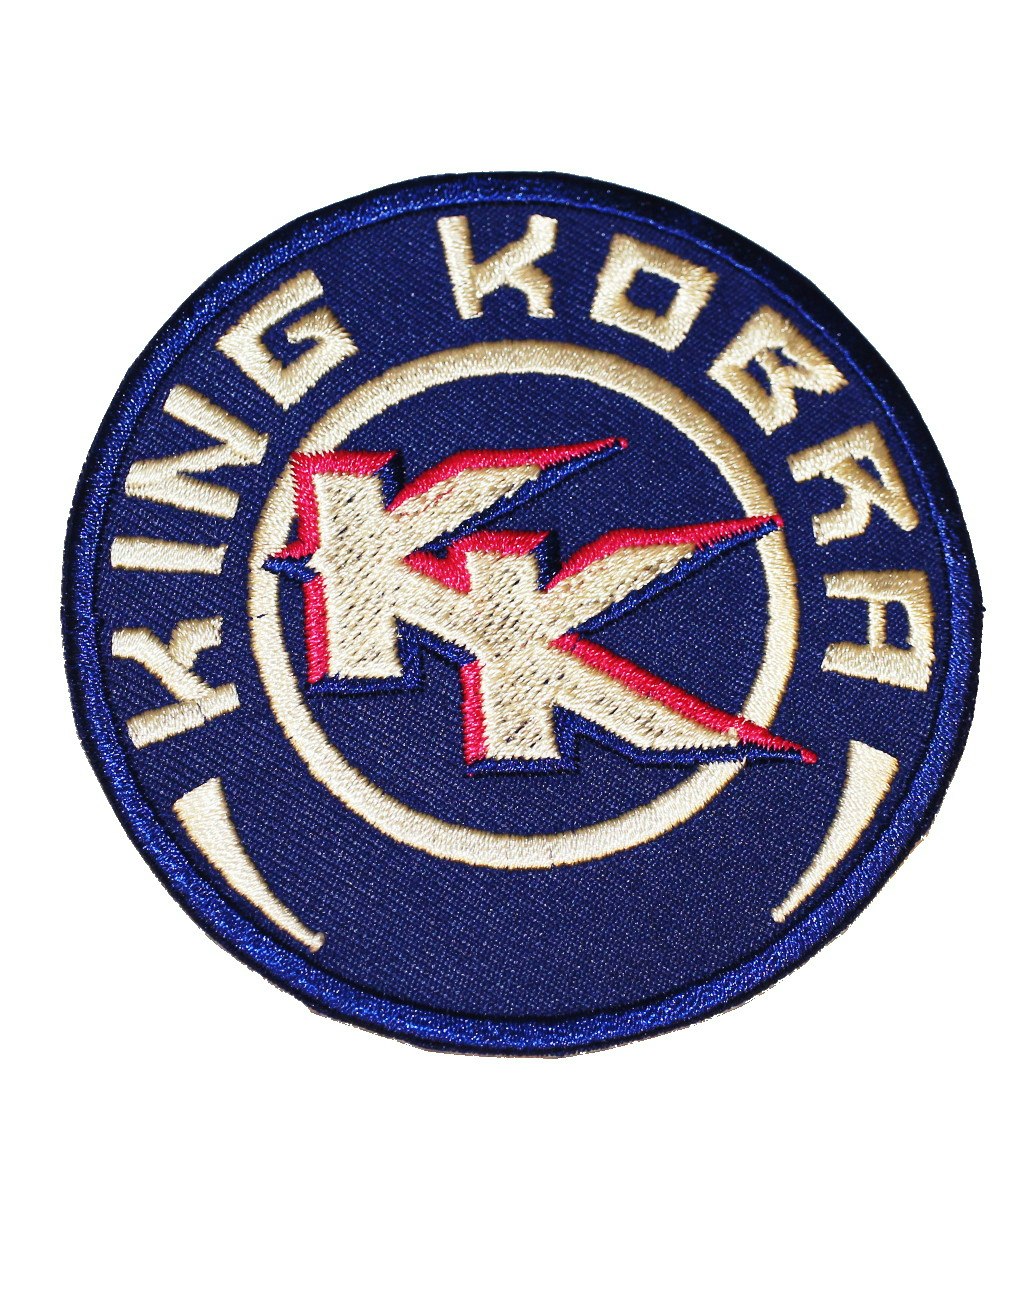 King kobra logo patch